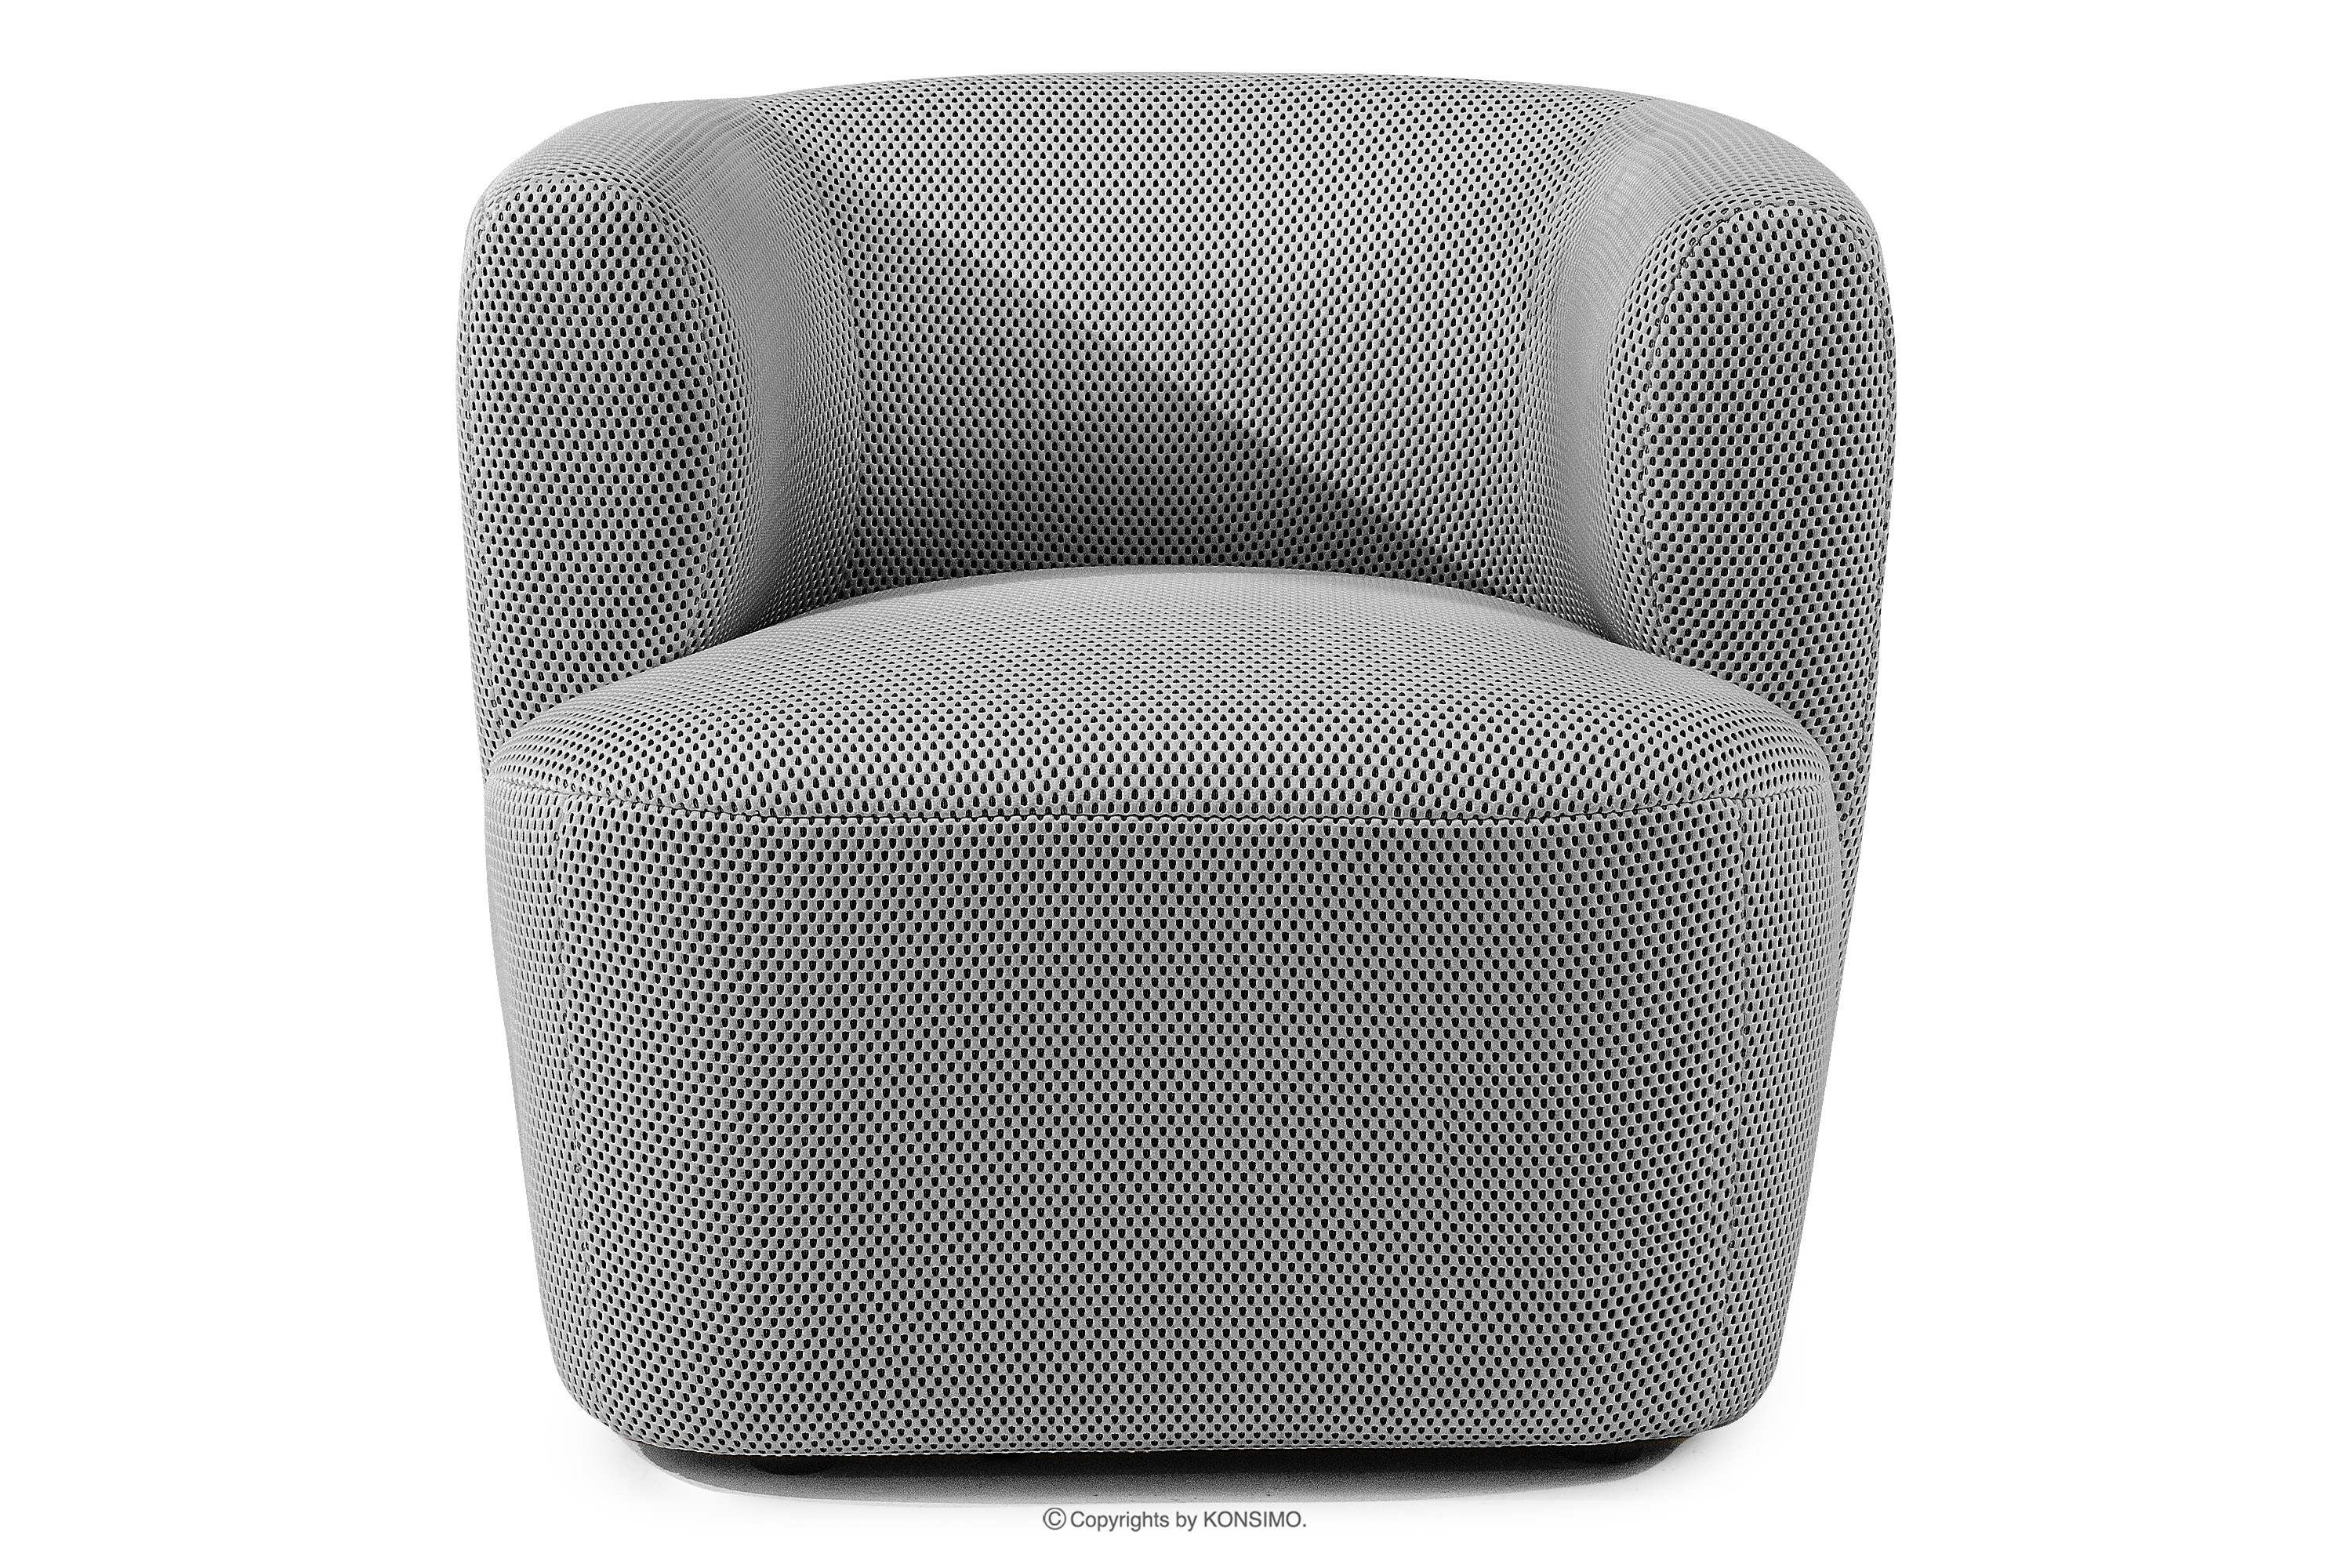 Nowoczesny fotel w tkaninie trójwymiarowej jasny szary